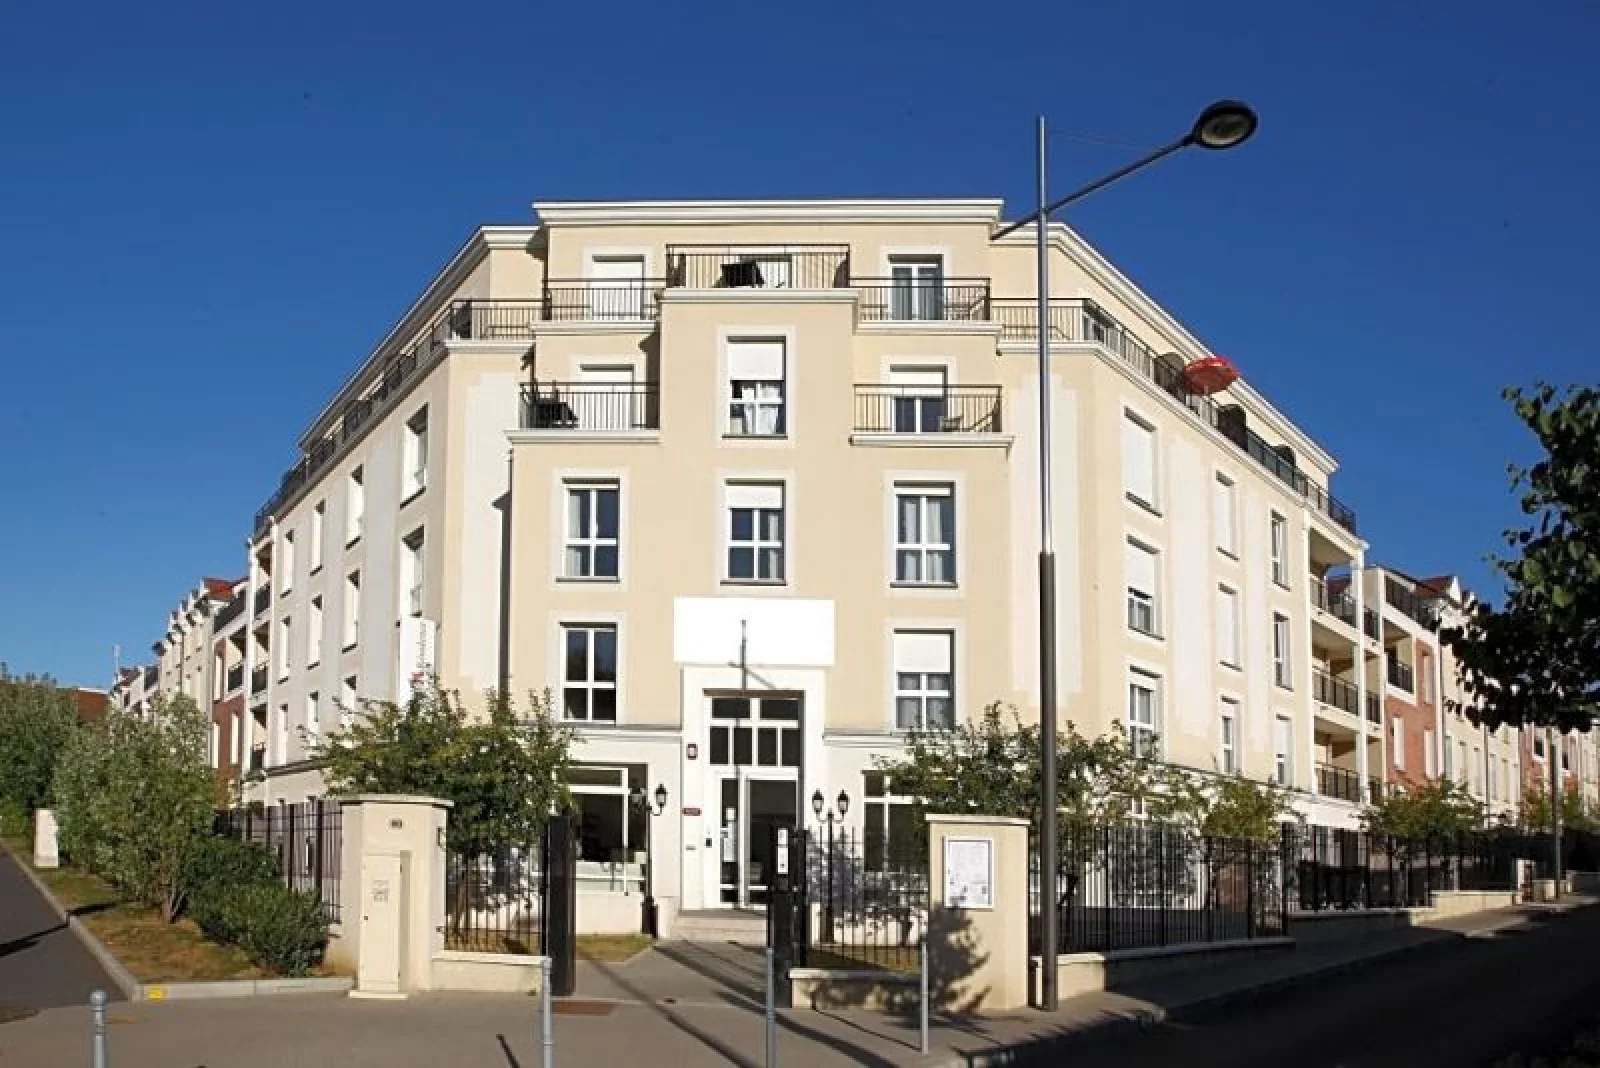 Location appartement meublé duplex 4 pièces 81m² (Paris est - Bry s/ Marne)